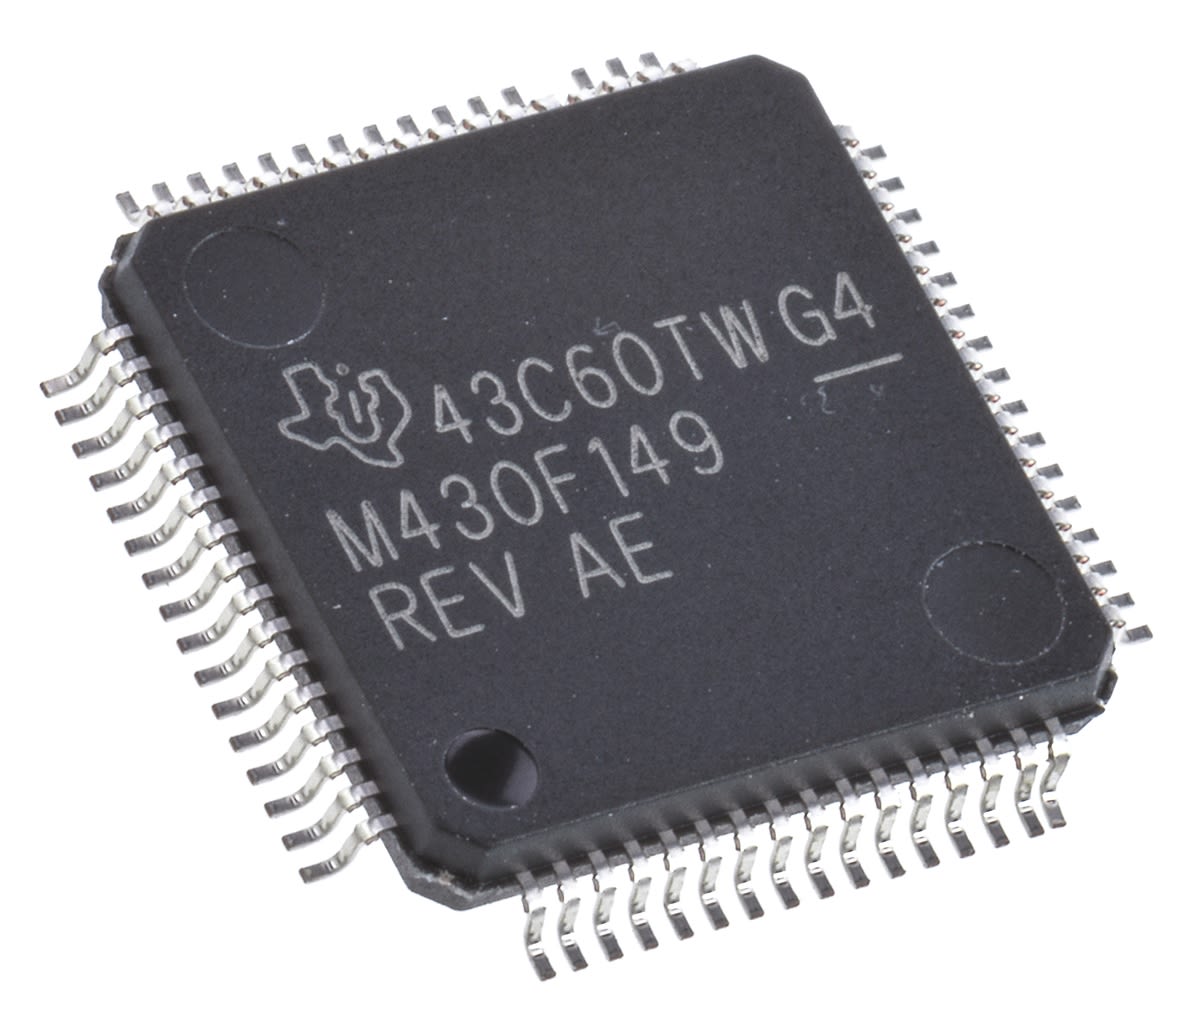 Mikrokontrolér MSP430F149IPM 16bit MSP430 8MHz 60 kB, 256 B Flash 2 kB RAM, počet kolíků: 64, LQFP